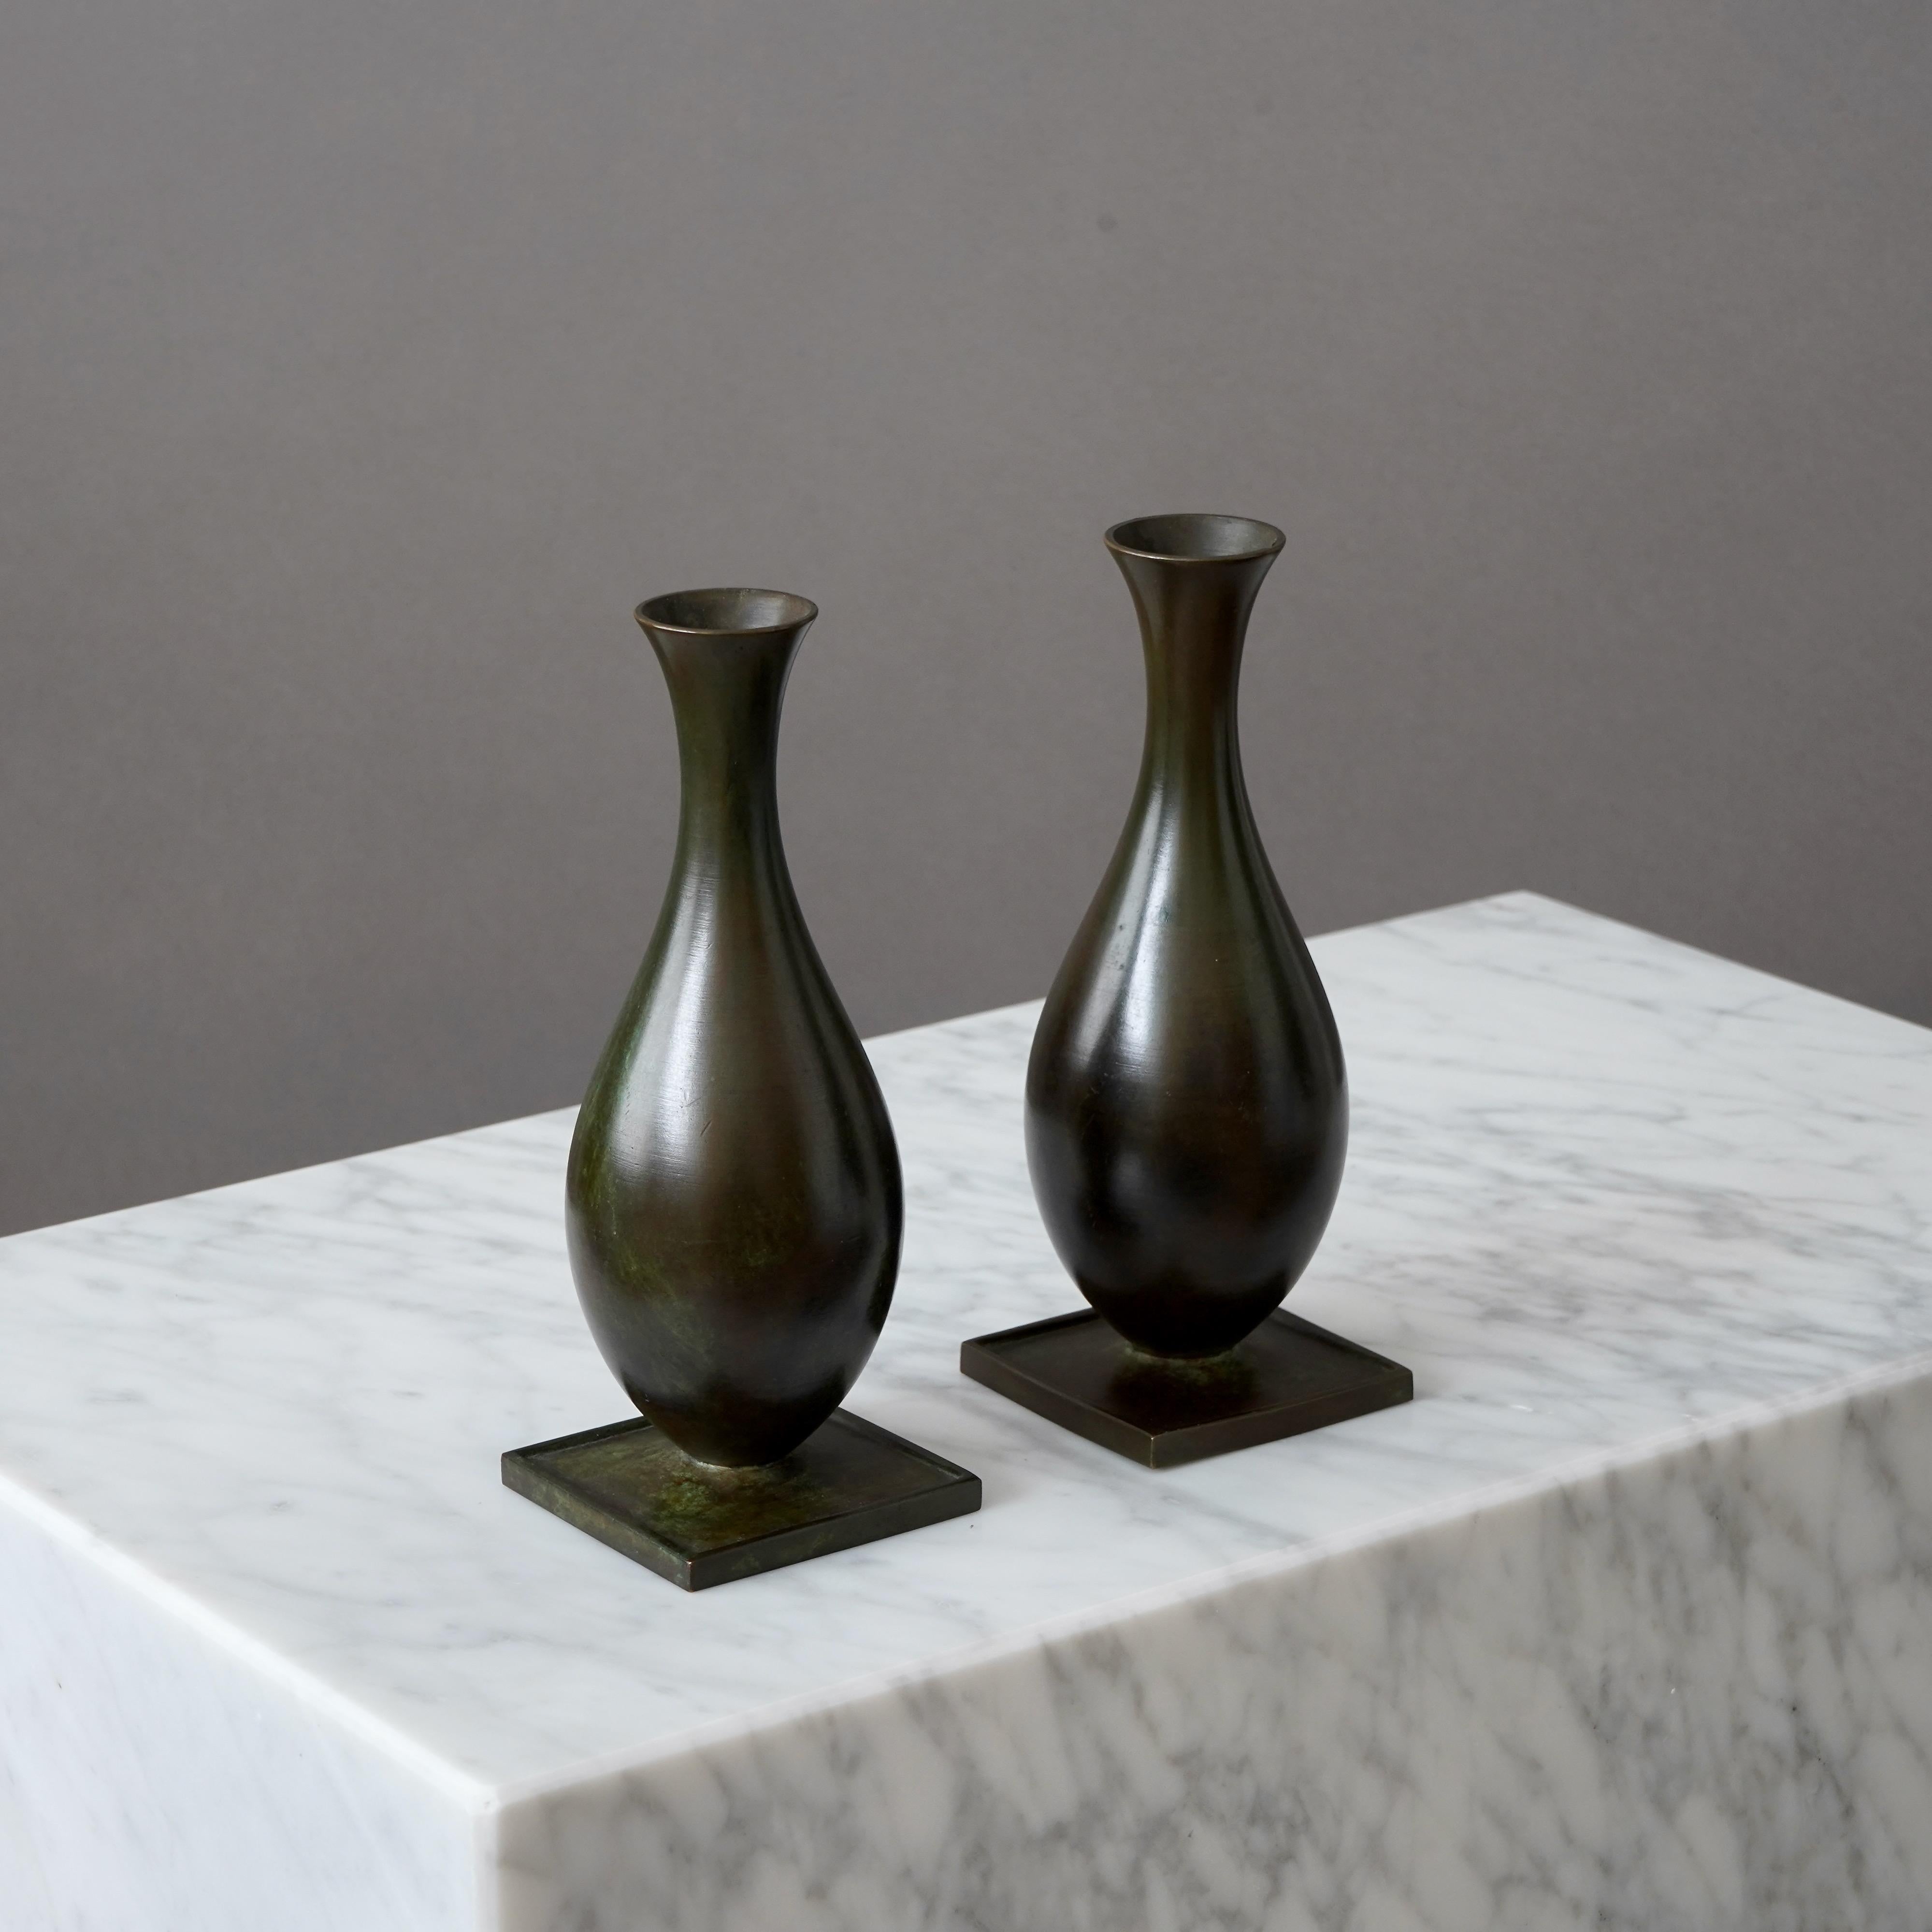 Un ensemble de 2 beaux vases en bronze avec une patine étonnante. 
Fabriqué par GAB Guldsmedsaktiebolaget, Suède, années 1930.  

Très bon état, avec quelques légères rayures.
Estampillé 